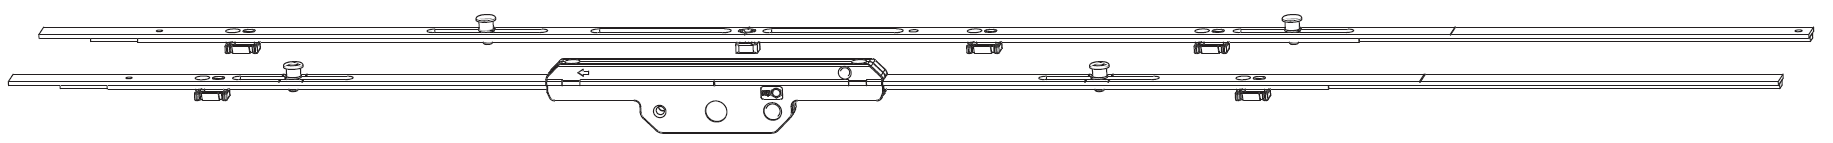 MAICO - Kit Cremonese RAIL-SYSTEMS per anta scorrevole altezza maniglia fissa prolungabile senza dss - gr / dim. 03 - entrata 17,5 - alt. man. 650 - lbb/hbb 1301 - 1500